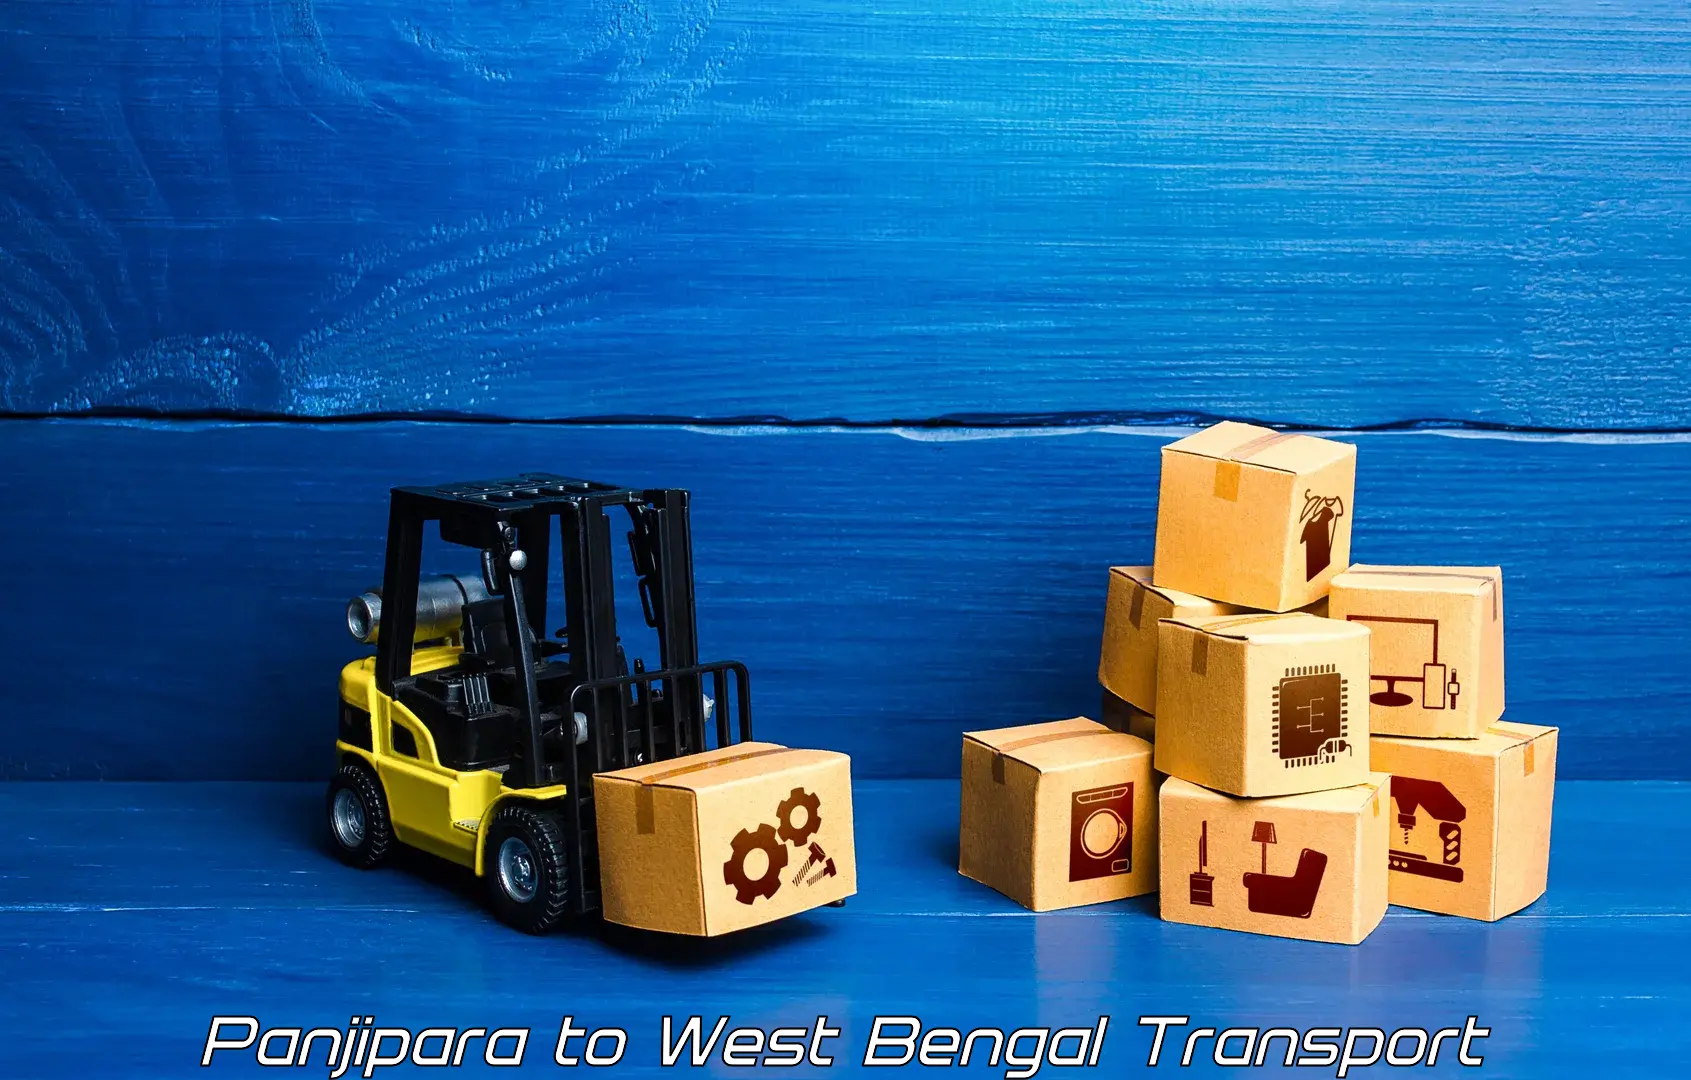 Cargo transport services Panjipara to Bishnupur